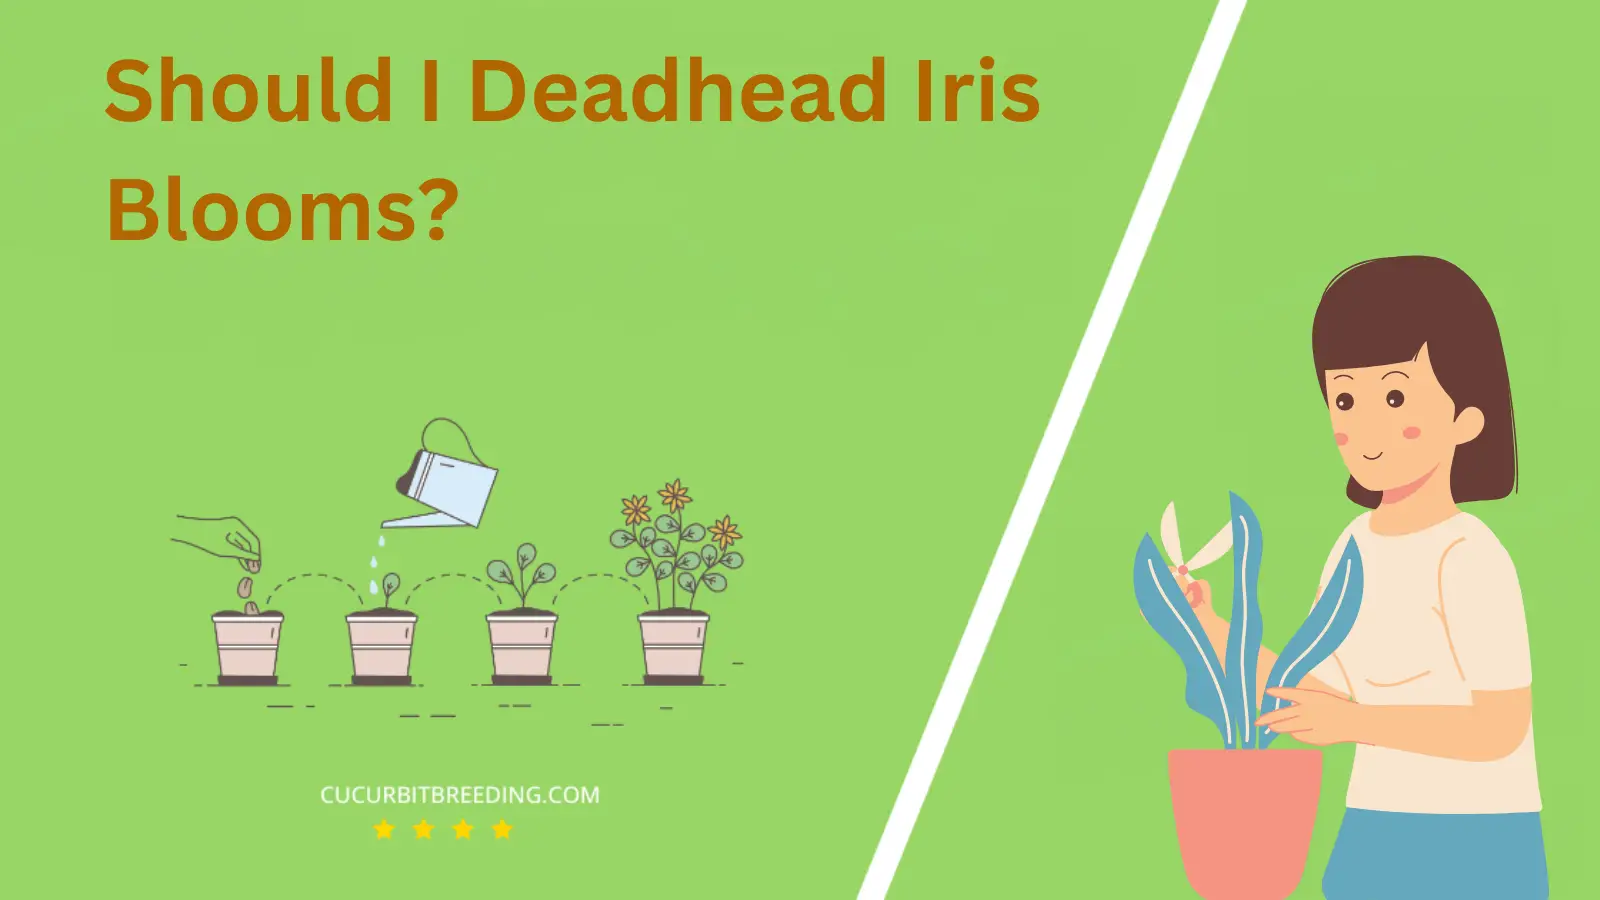 Should I Deadhead Iris Blooms?